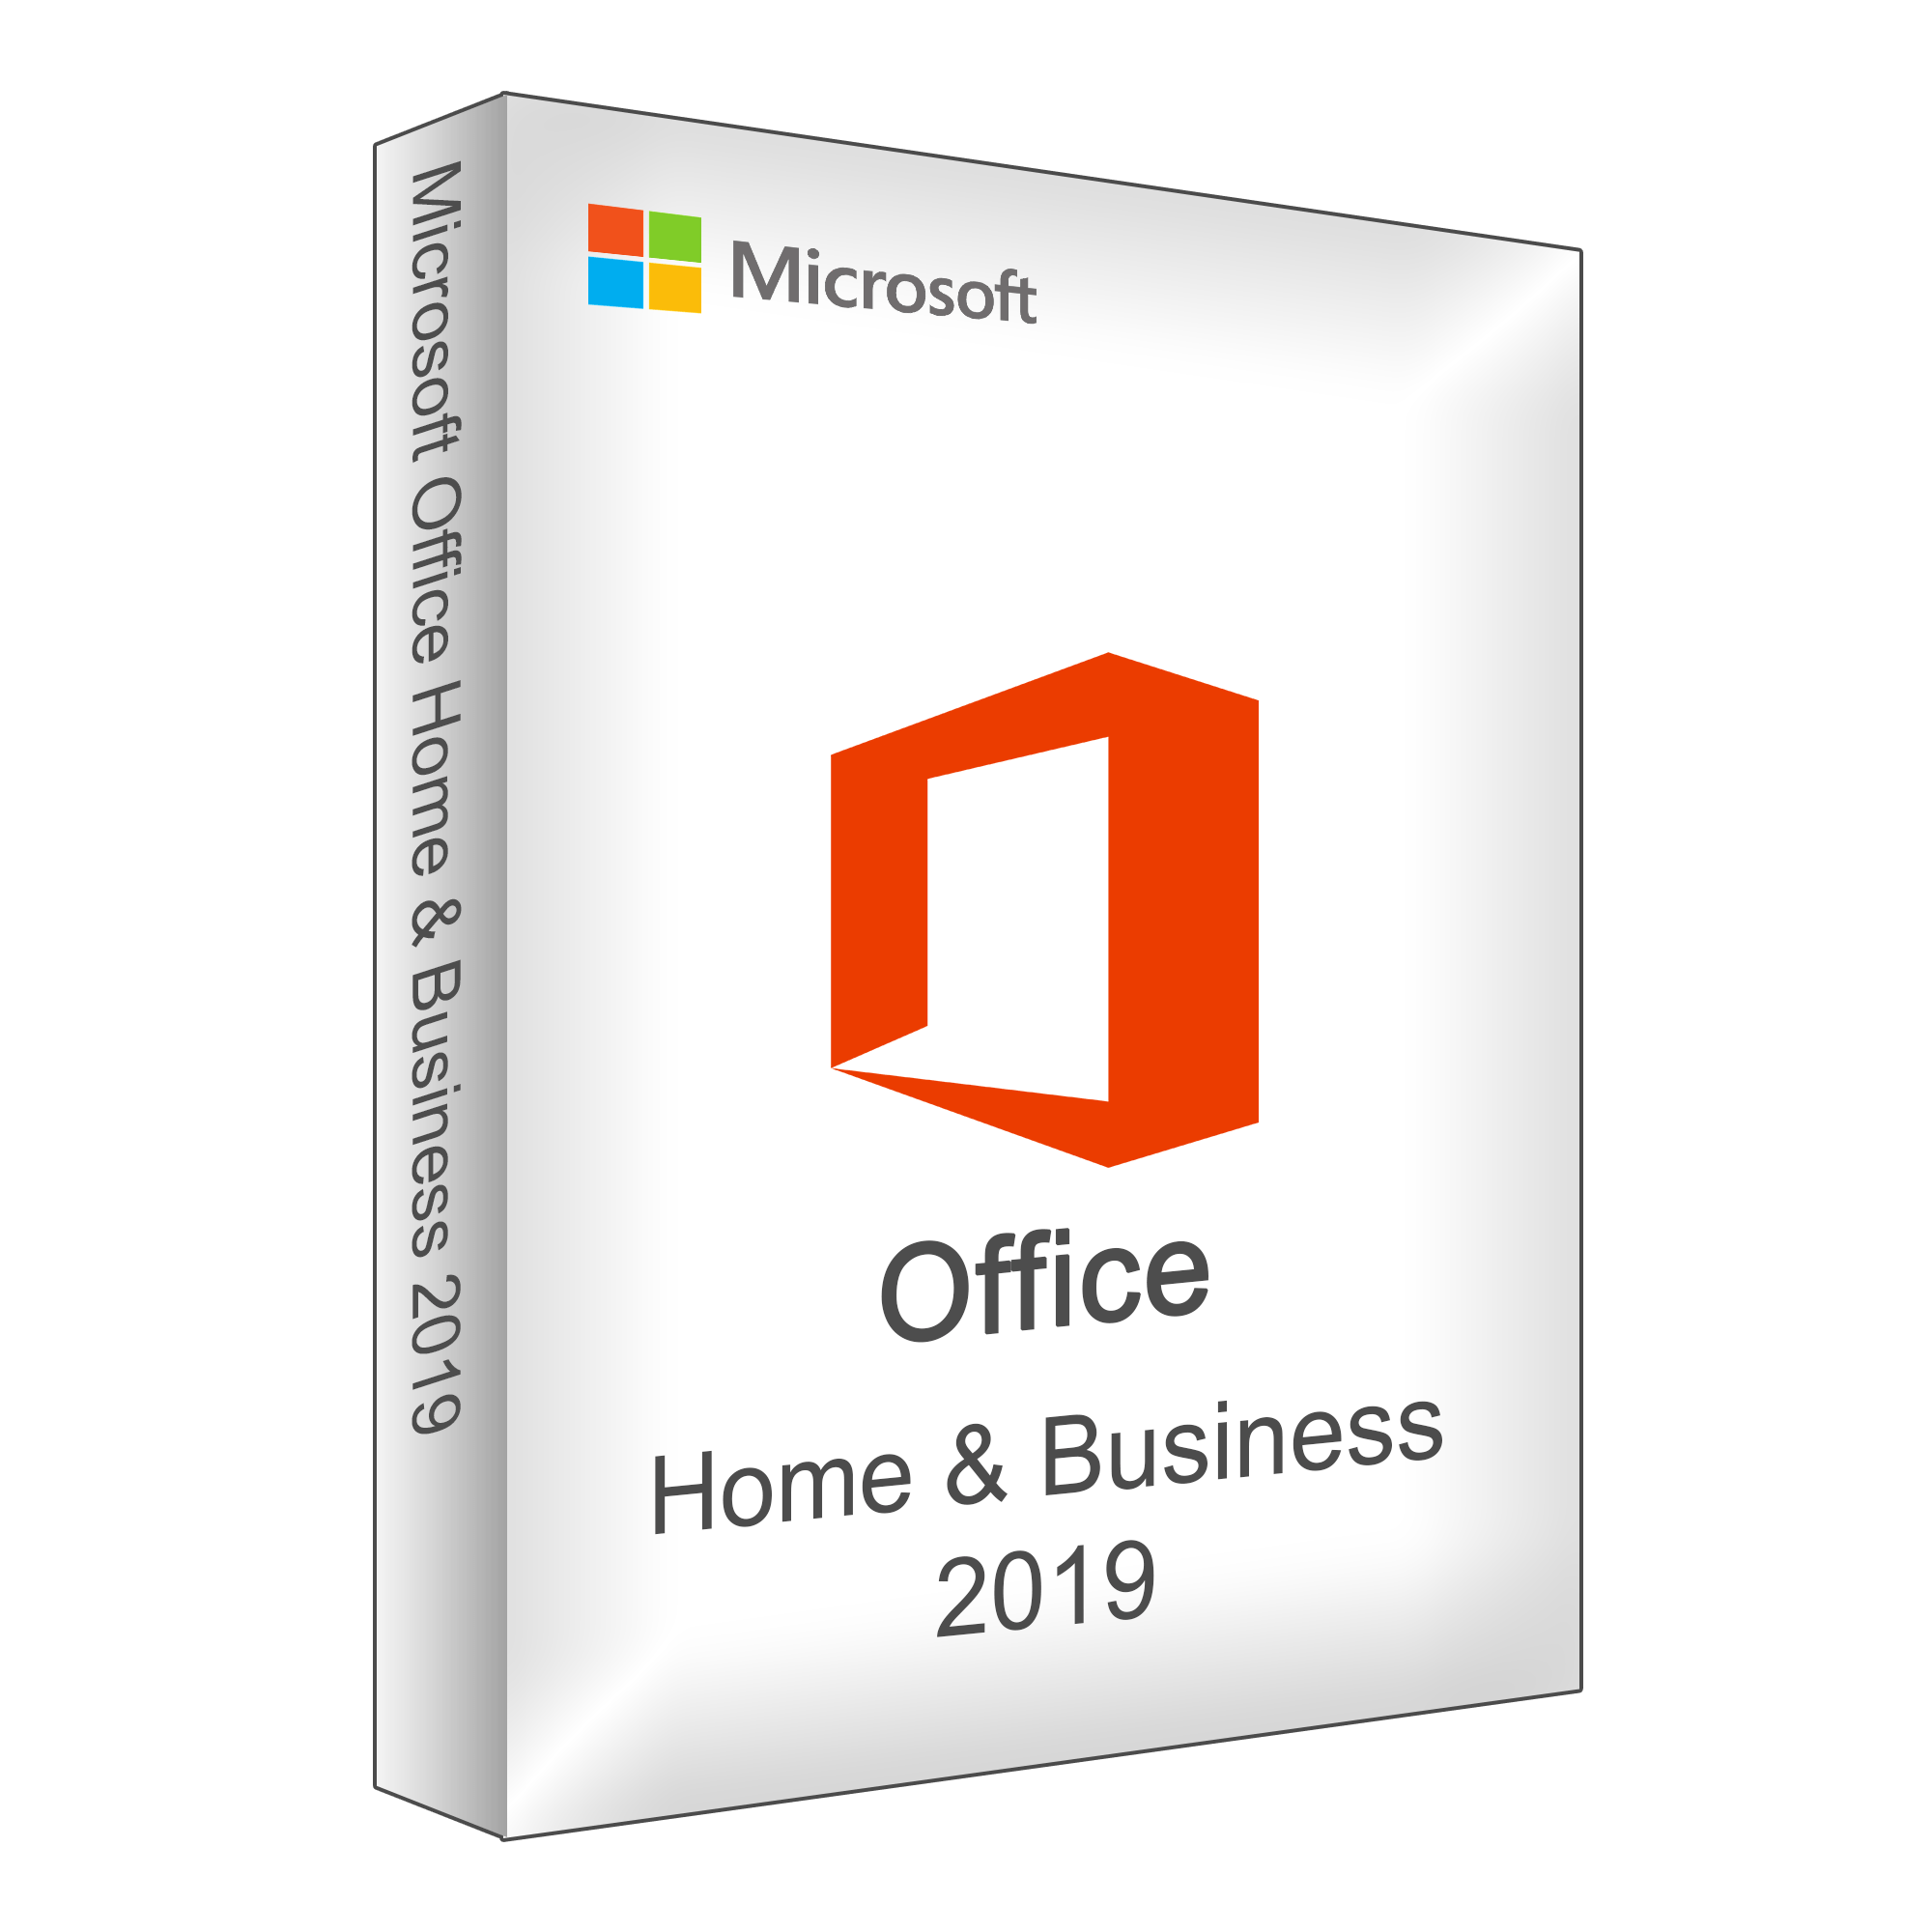 Lauft Office 2019 Auf Windows 7